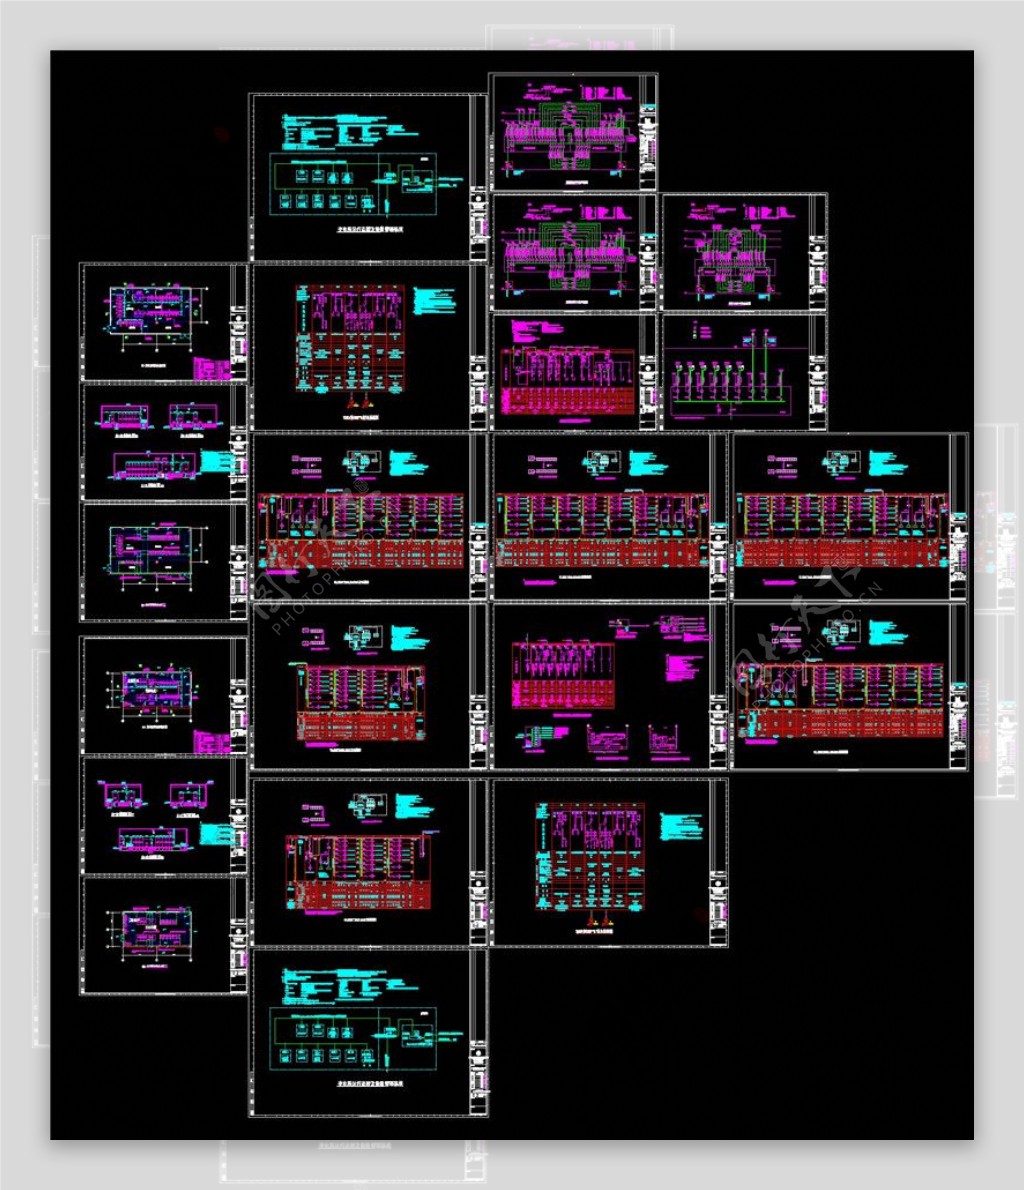 供配电系统图CAD图纸